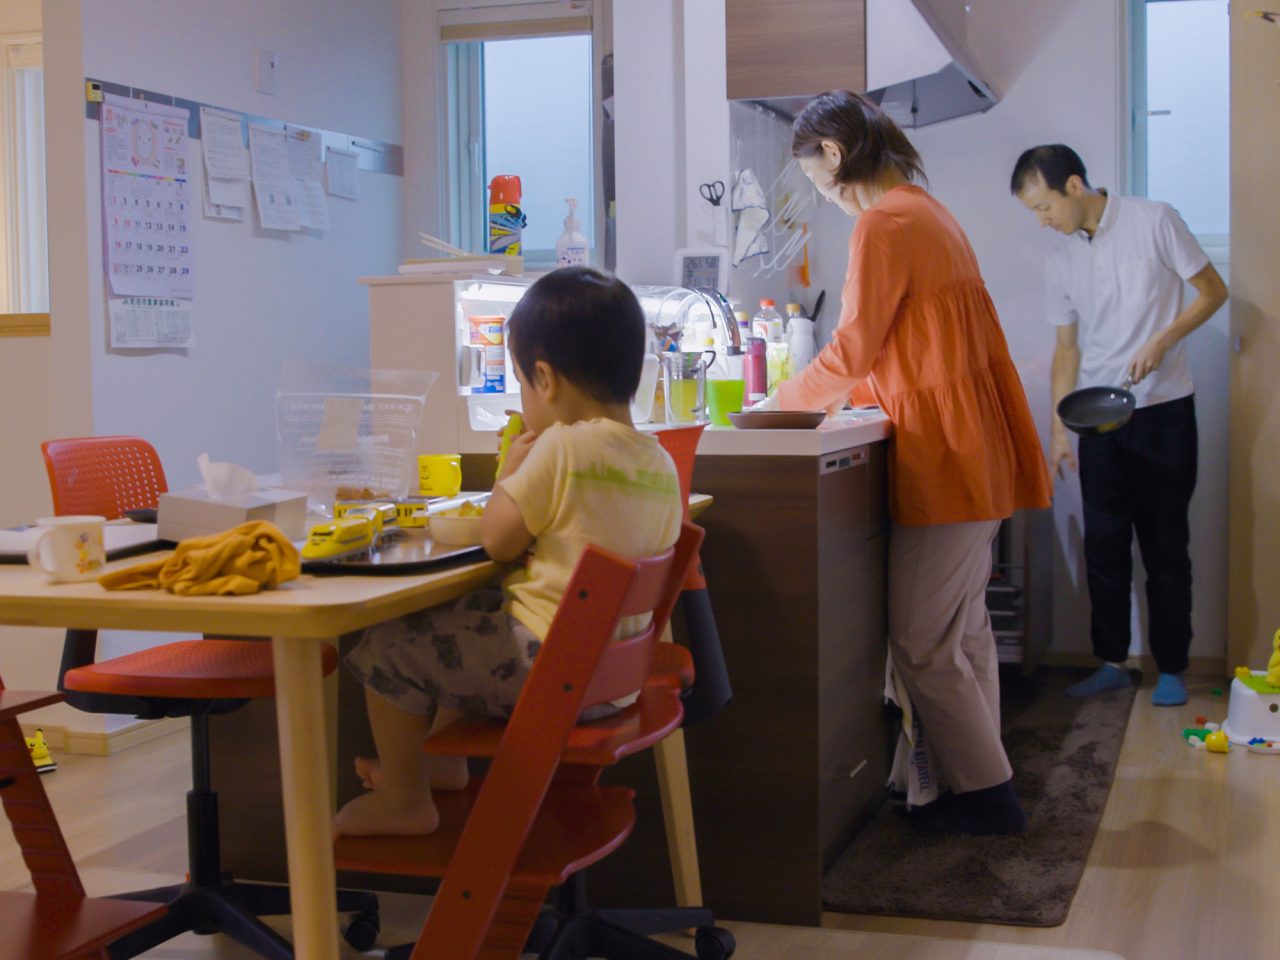 Ett litet barn sitter vid matbordet i ett kök, en kvinna och en man diskar och plockar undan bakom honom.